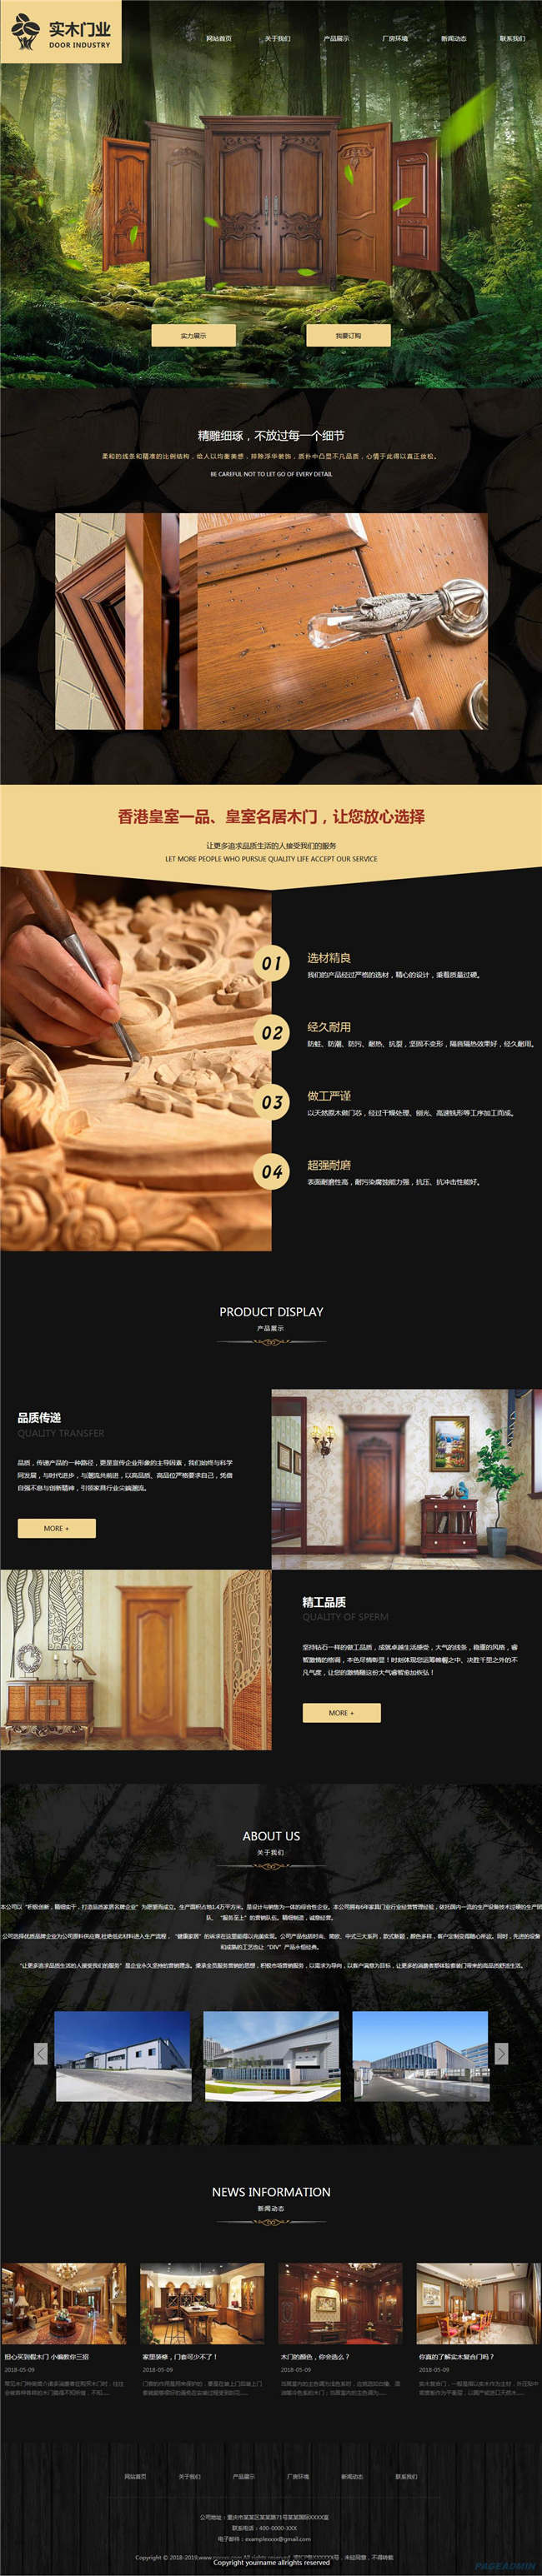 门业企业五金厨卫陶瓷门窗建材网站WP整站模板(含手机版)预览图